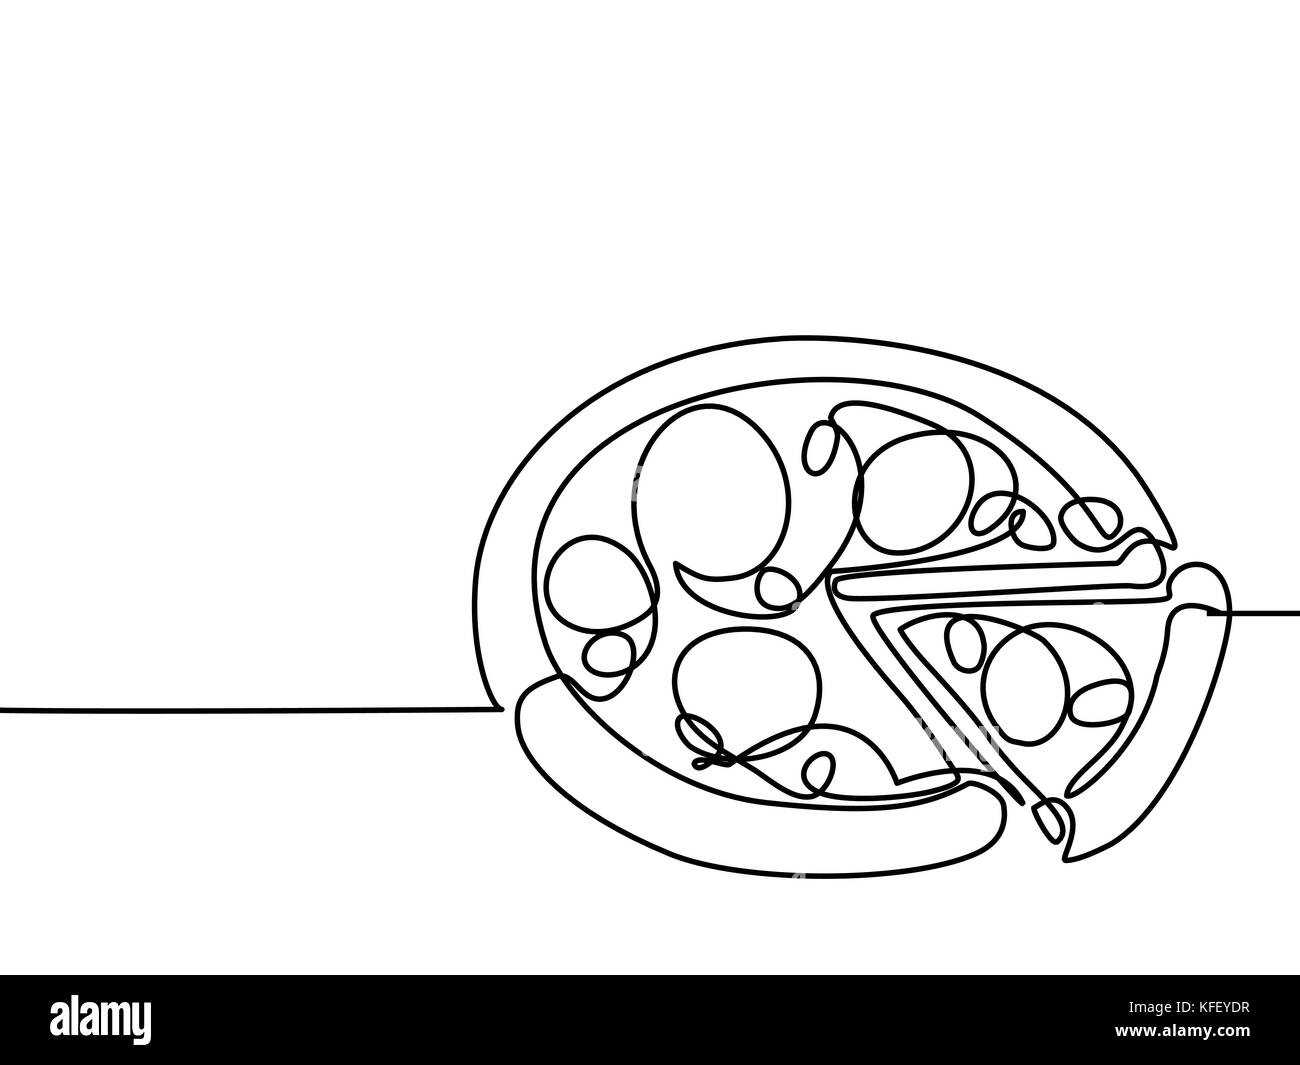 Rappresentazione in linea continua. Grande pizza con fetta. Illustrazione vettoriale con linee nere su sfondo bianco. Illustrazione Vettoriale